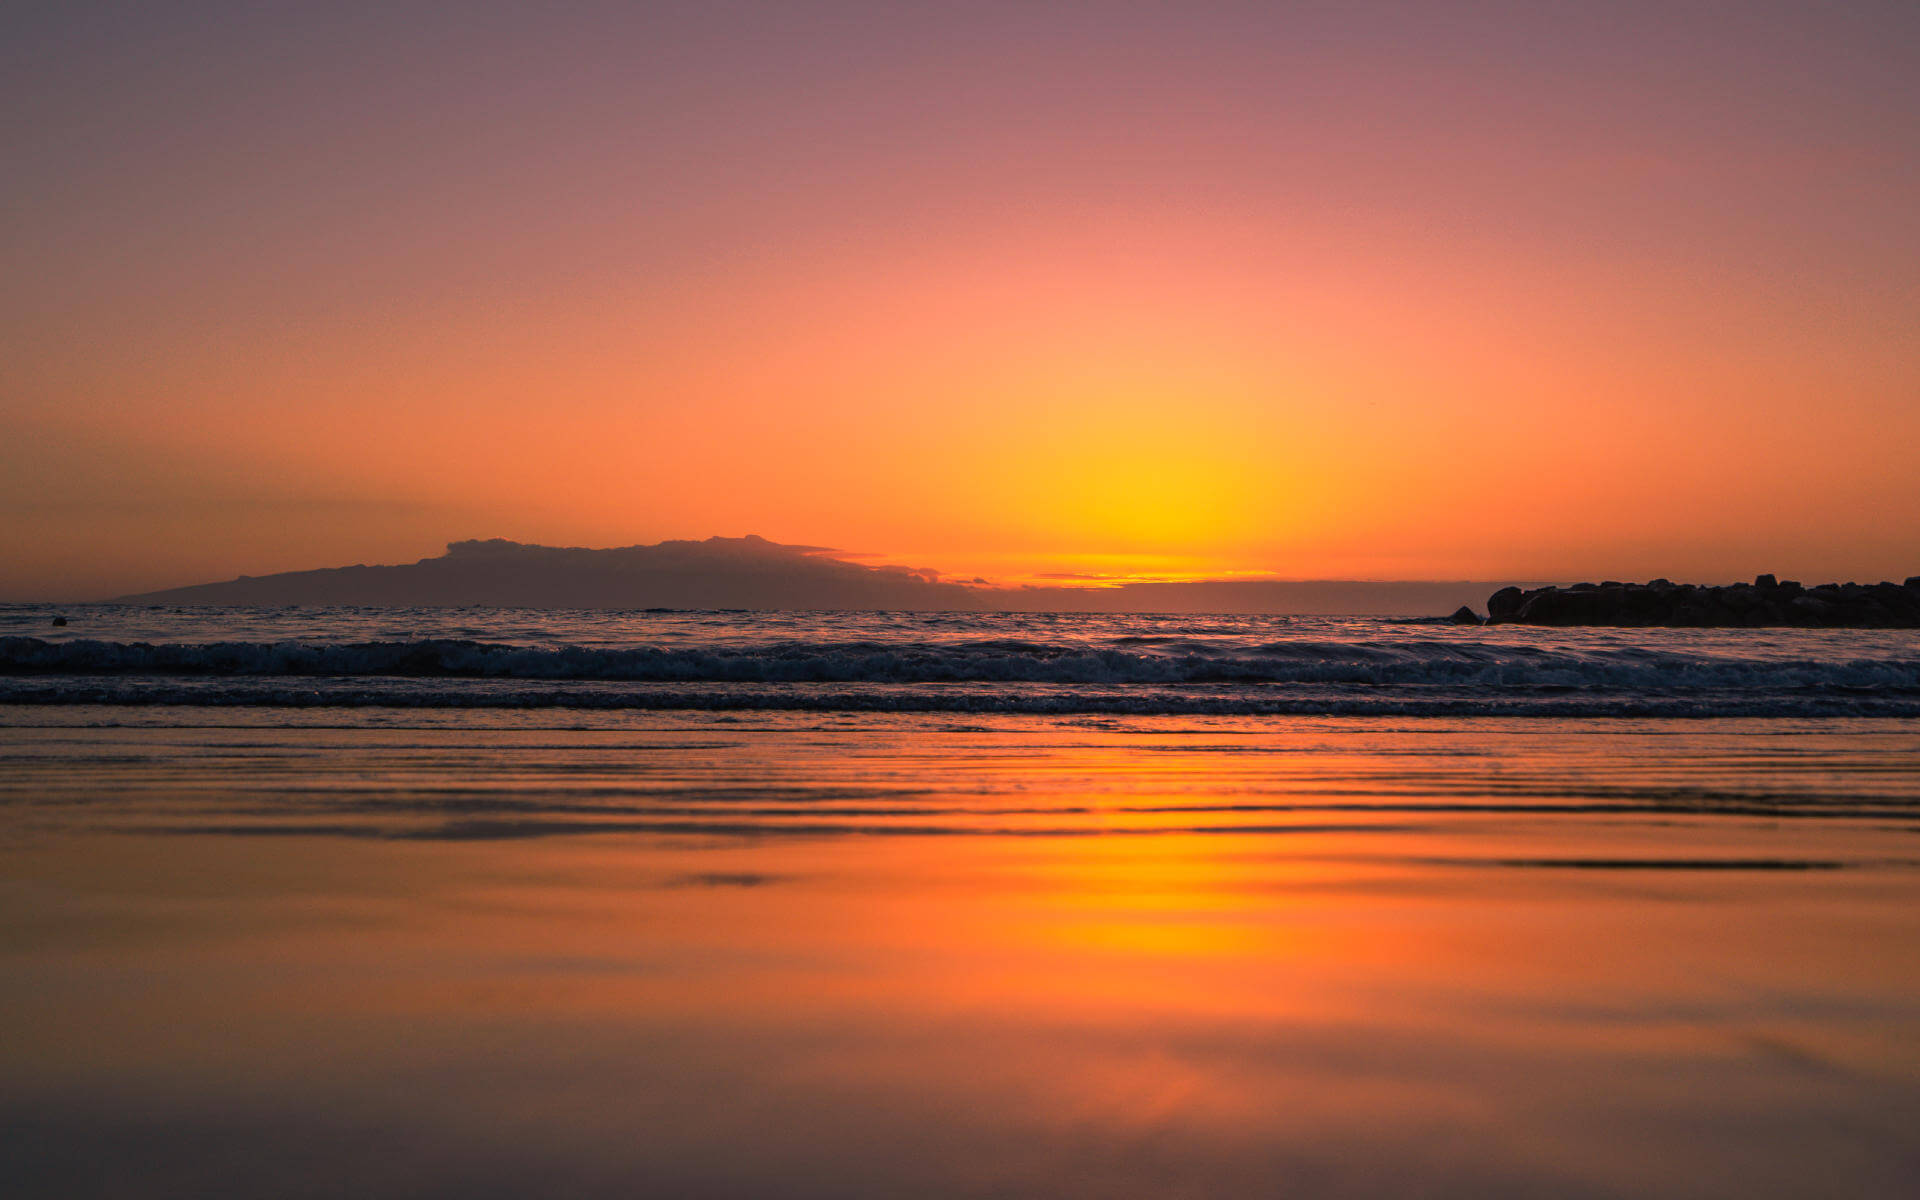 Zu einem der schönsten Erlebnisse auf der Kanareninsel Teneriffa zählt der tägliche Sonnenuntergang über dem Meer - ein unvergessliches Farbenspiel.